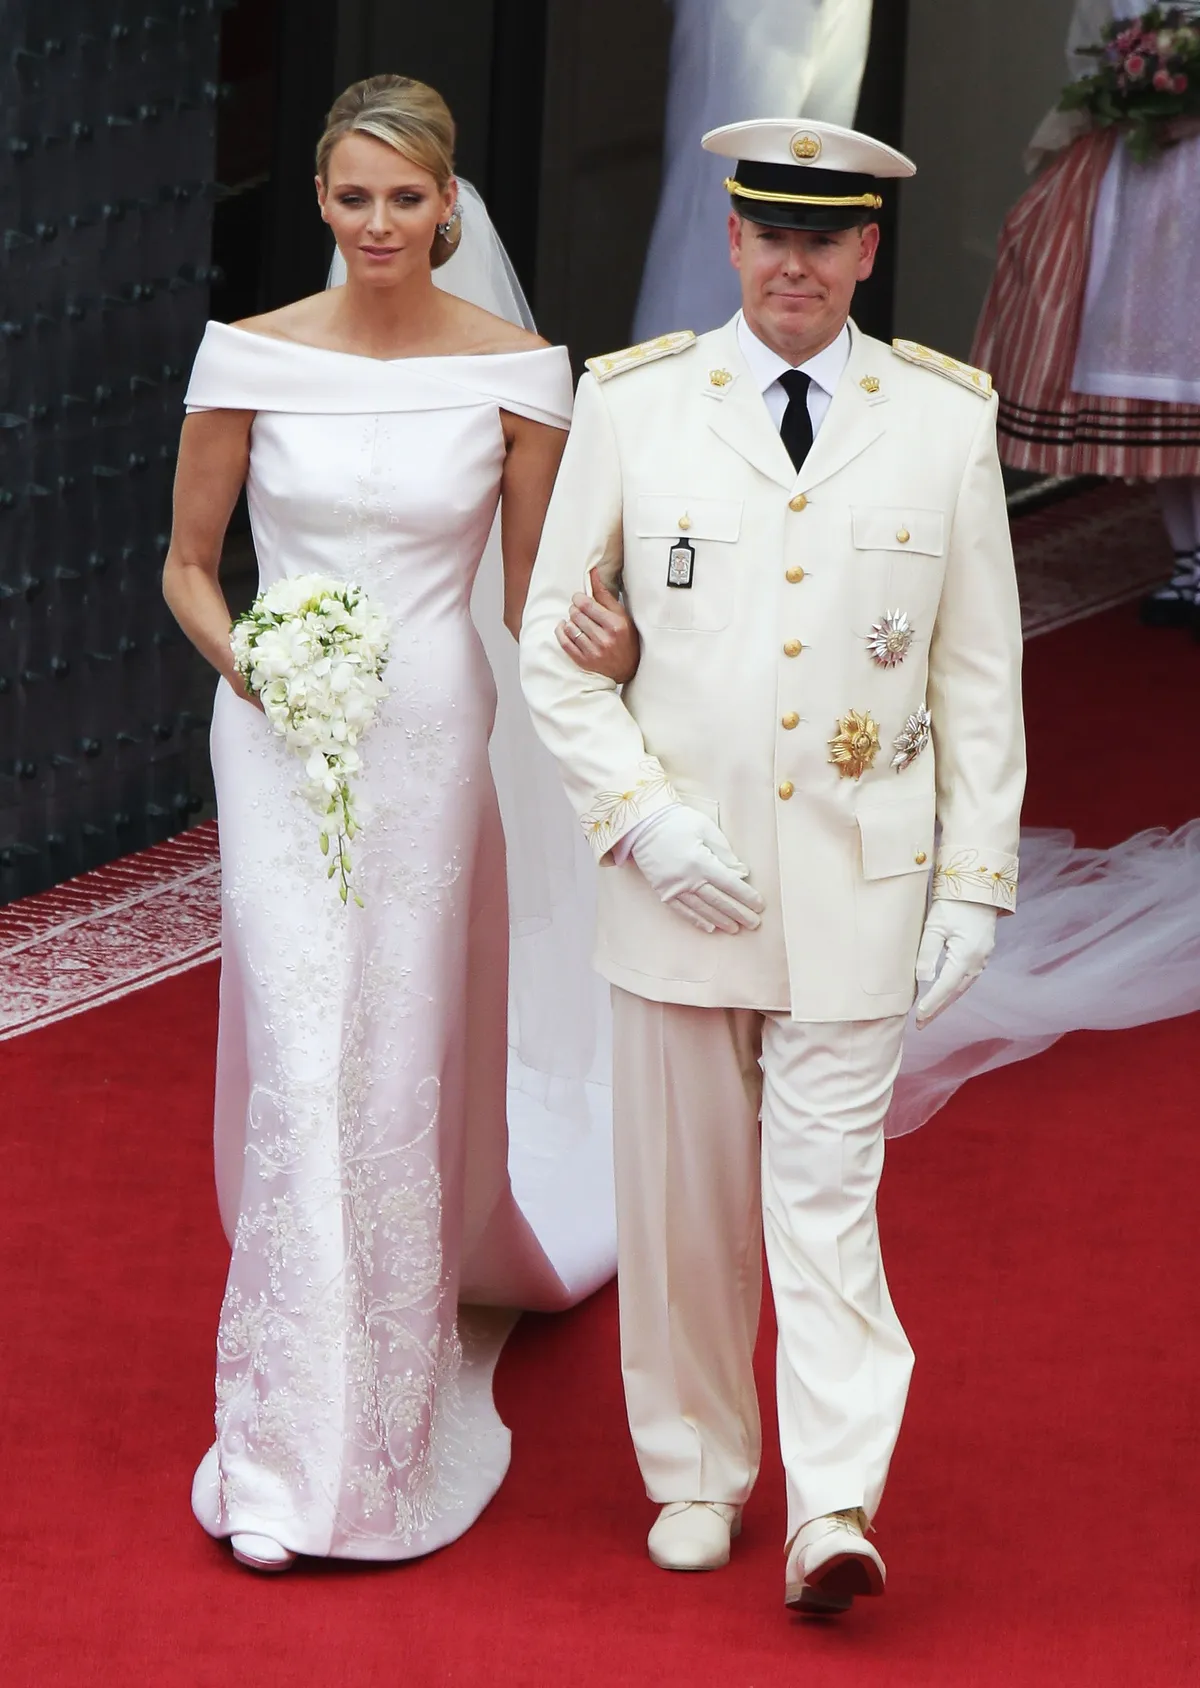 Charlène Wittstock et son mari le prince Albert II le Jour de leur mariage | Photo : Getty Images